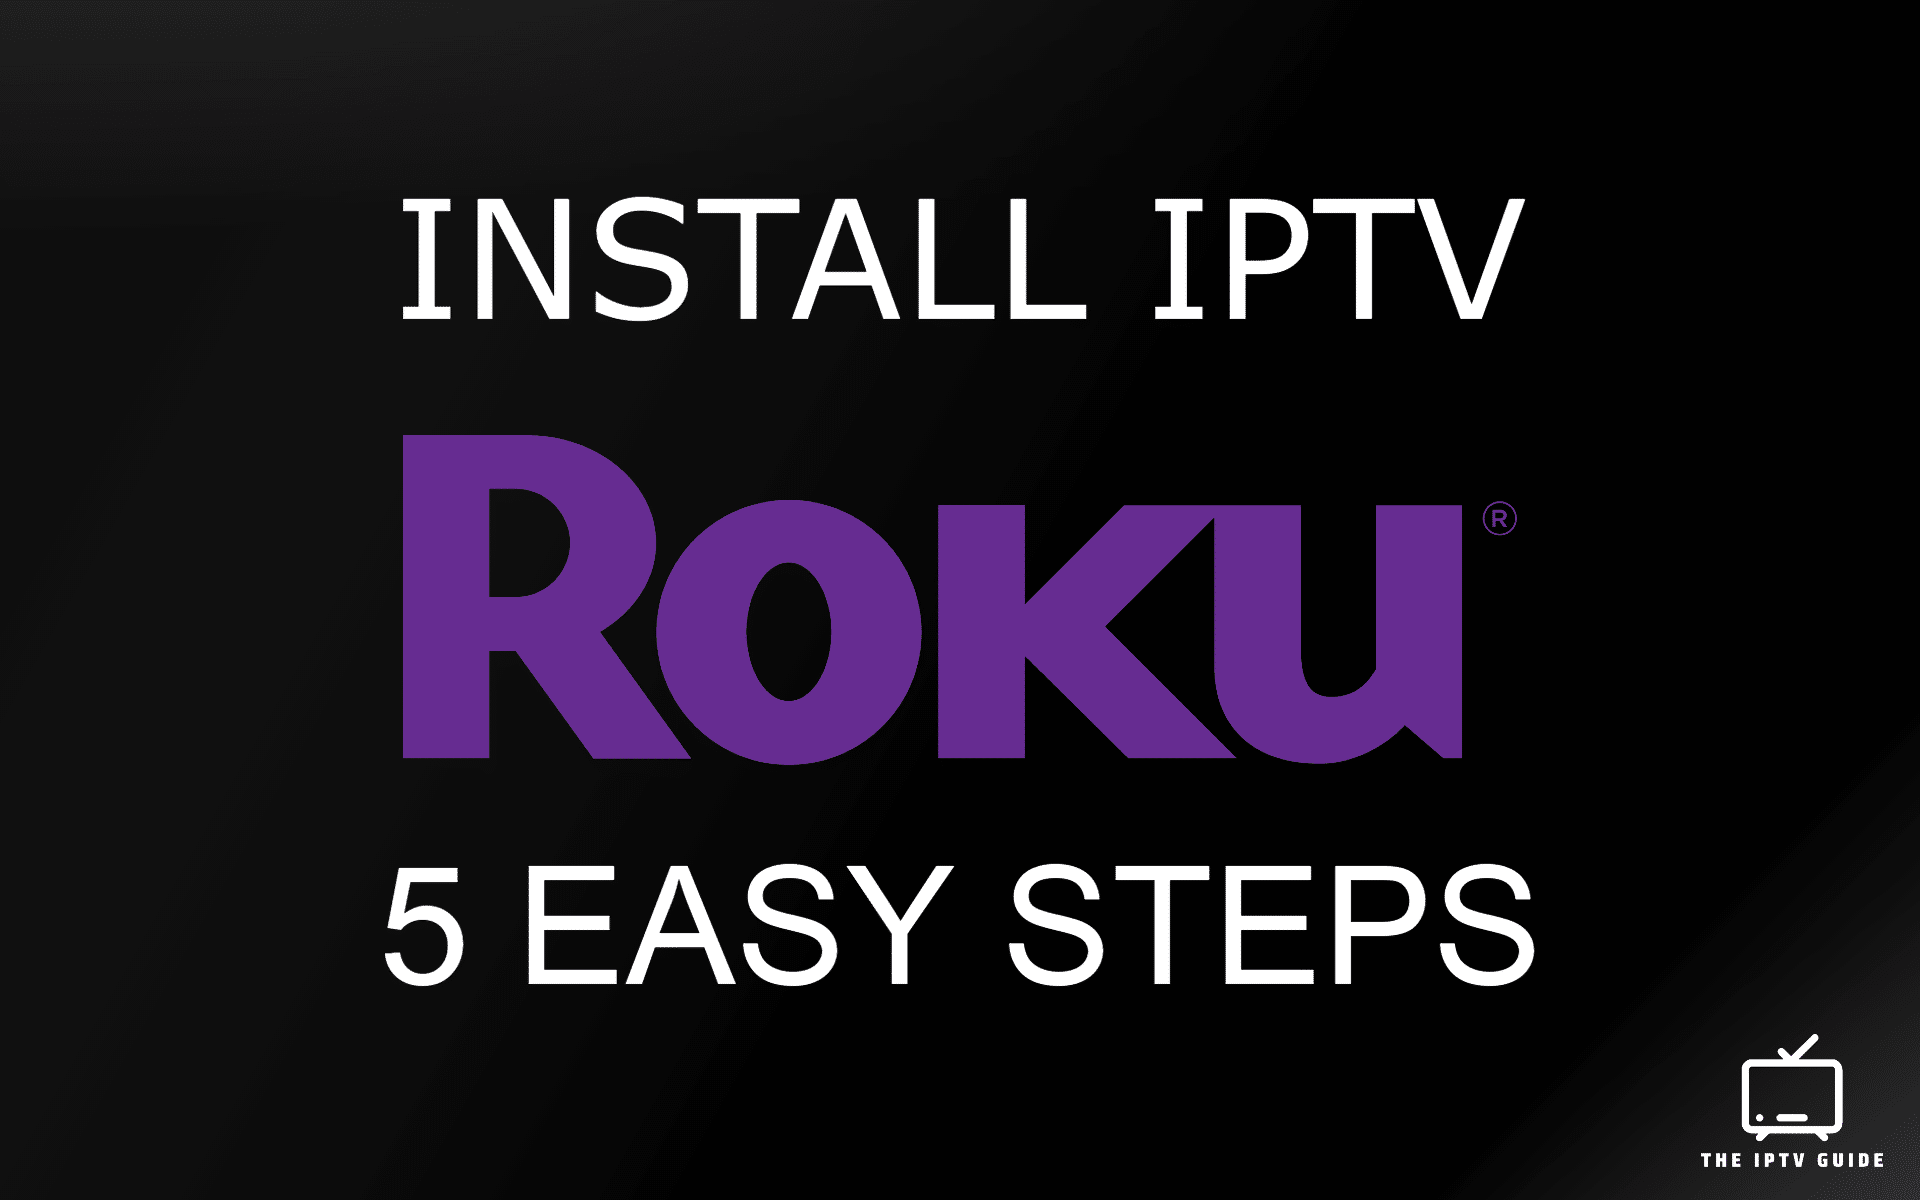 Roku IPTV